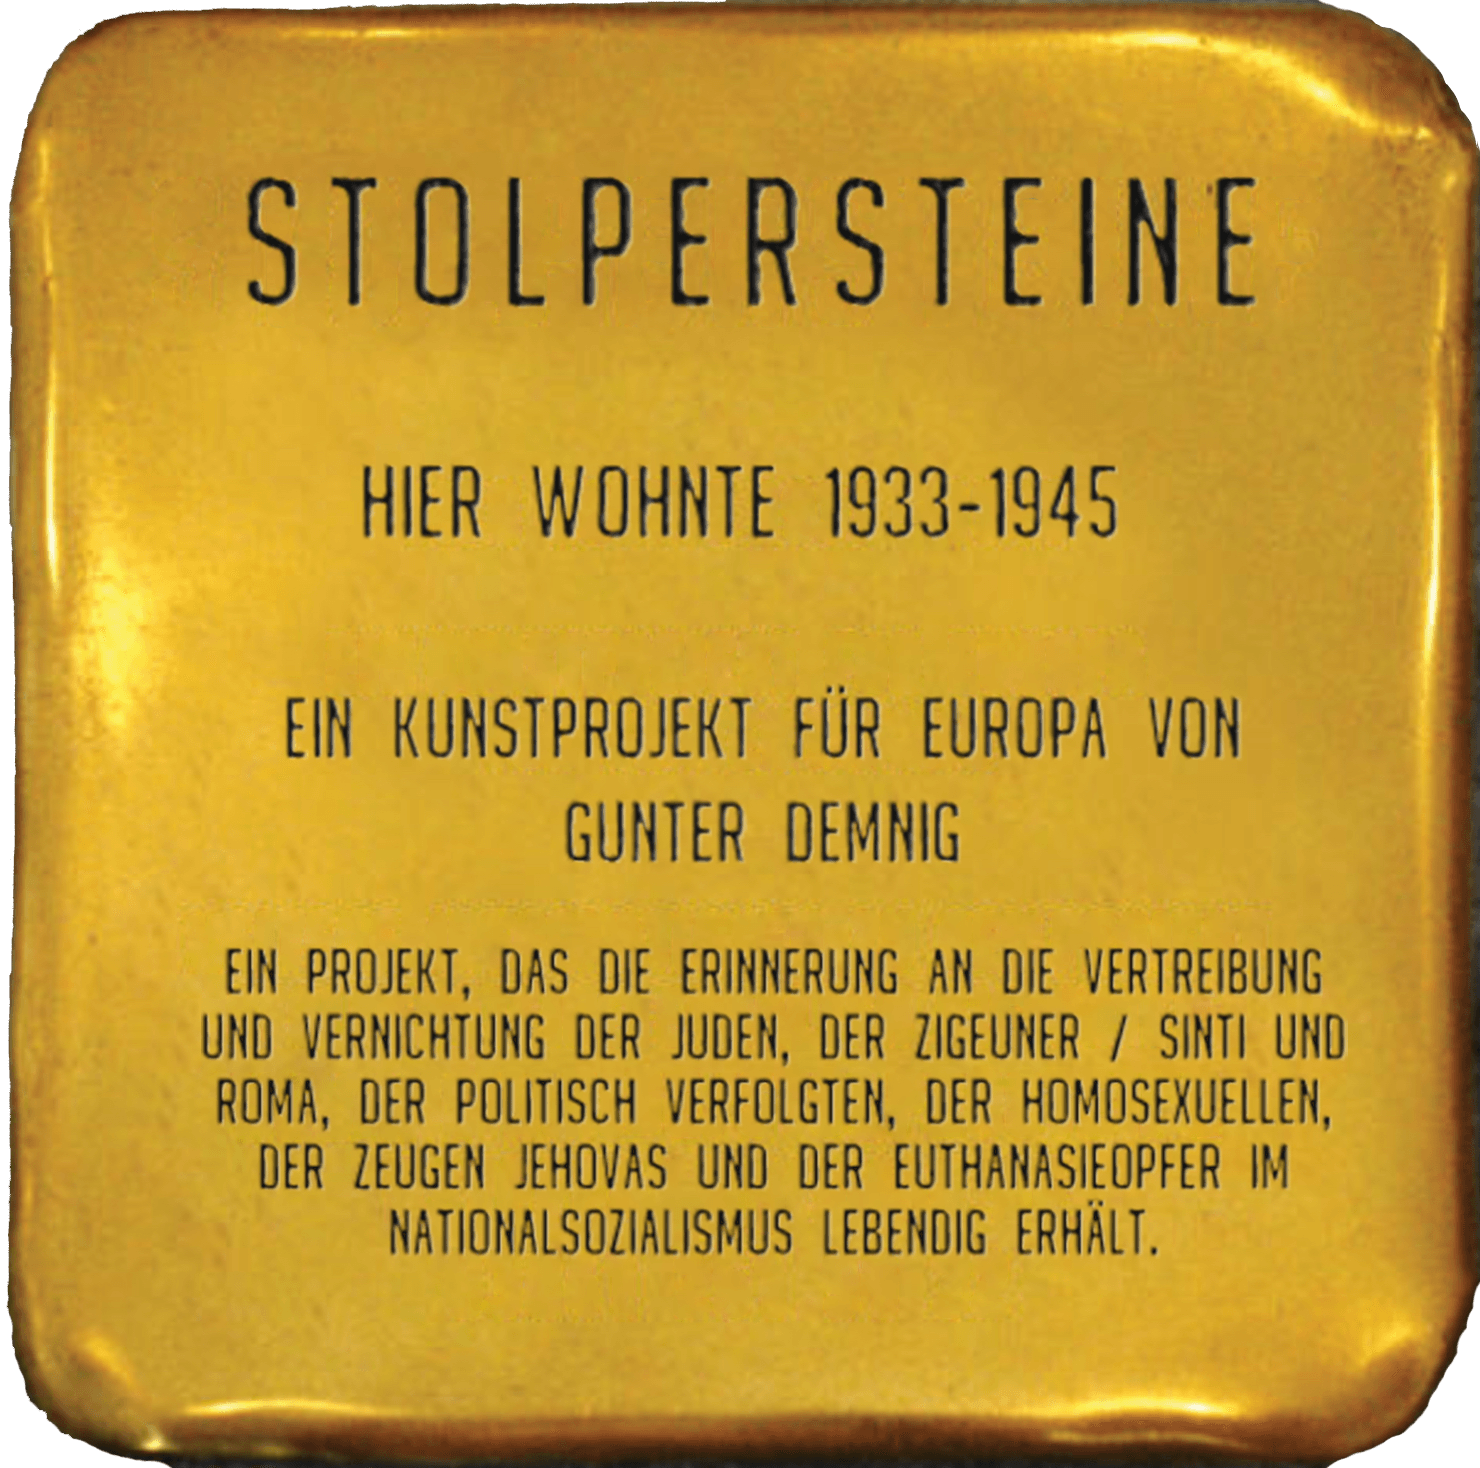 Ein Bild eines Stolpersteins mit dem Namen des Künstlers Gunther Demnig sowie einer kurzen Beschreibung des Projektes. Stolpersteine sollen an alle Verfolgten der Nationalsozialisten erinnern.